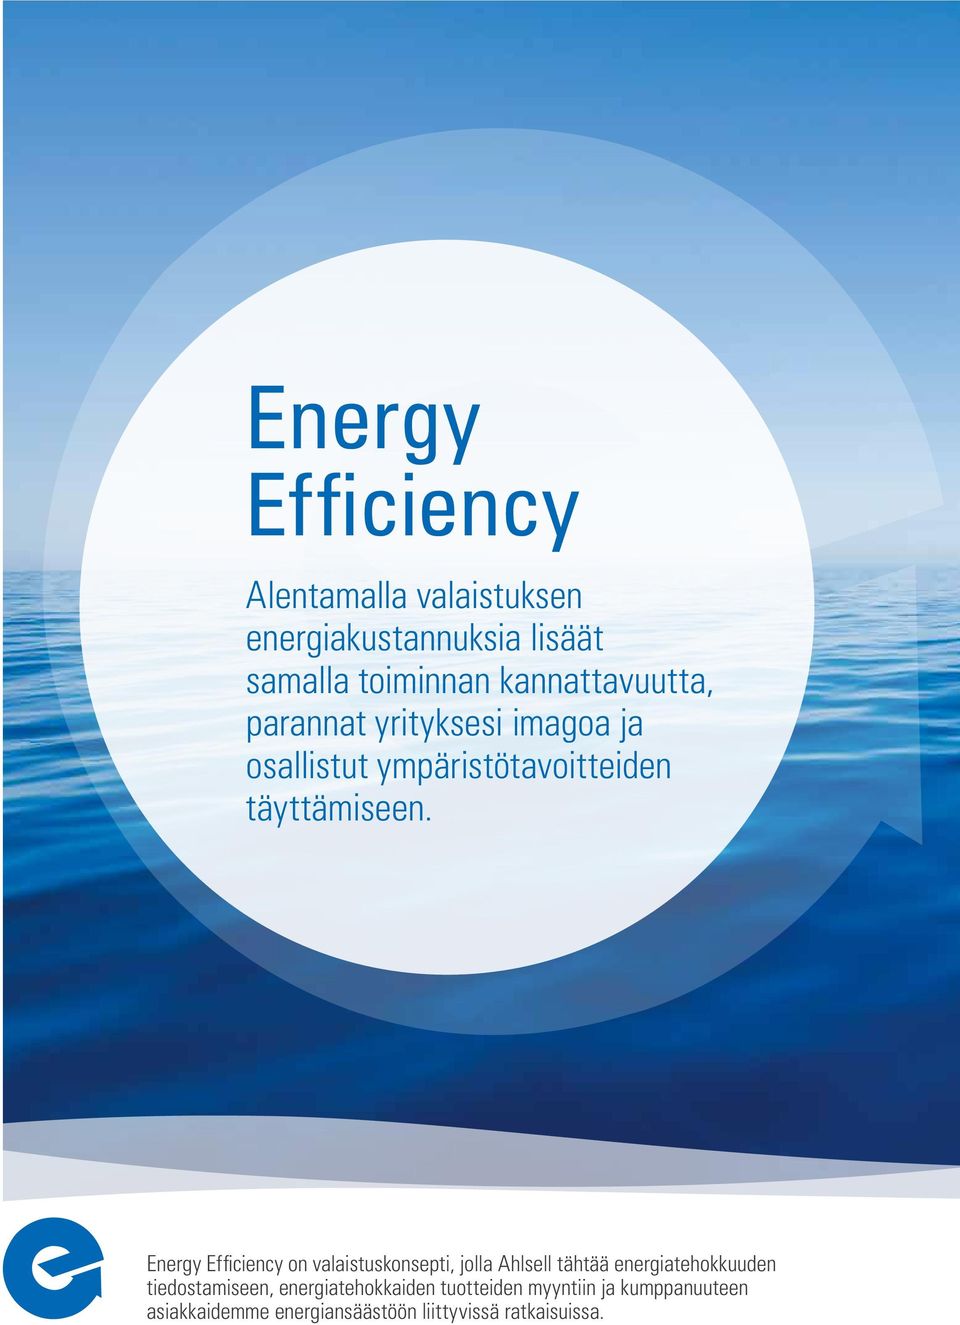 Energy Efficiency on valaistuskonsepti, jolla Ahlsell tähtää energiatehokkuuden tiedostamiseen,